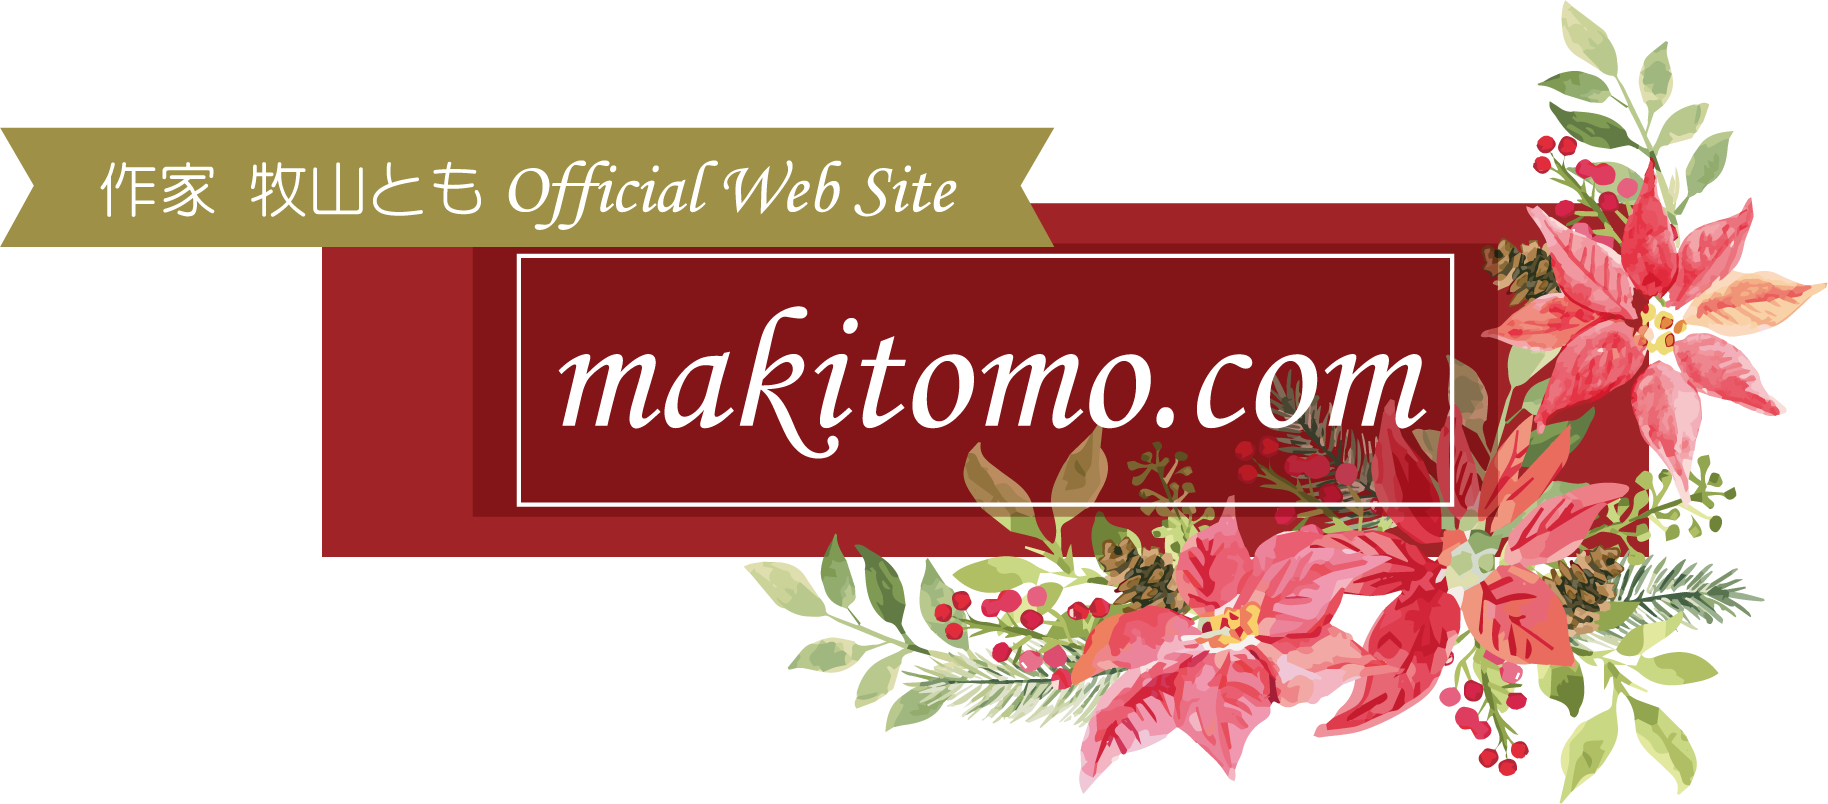 makitomo.com